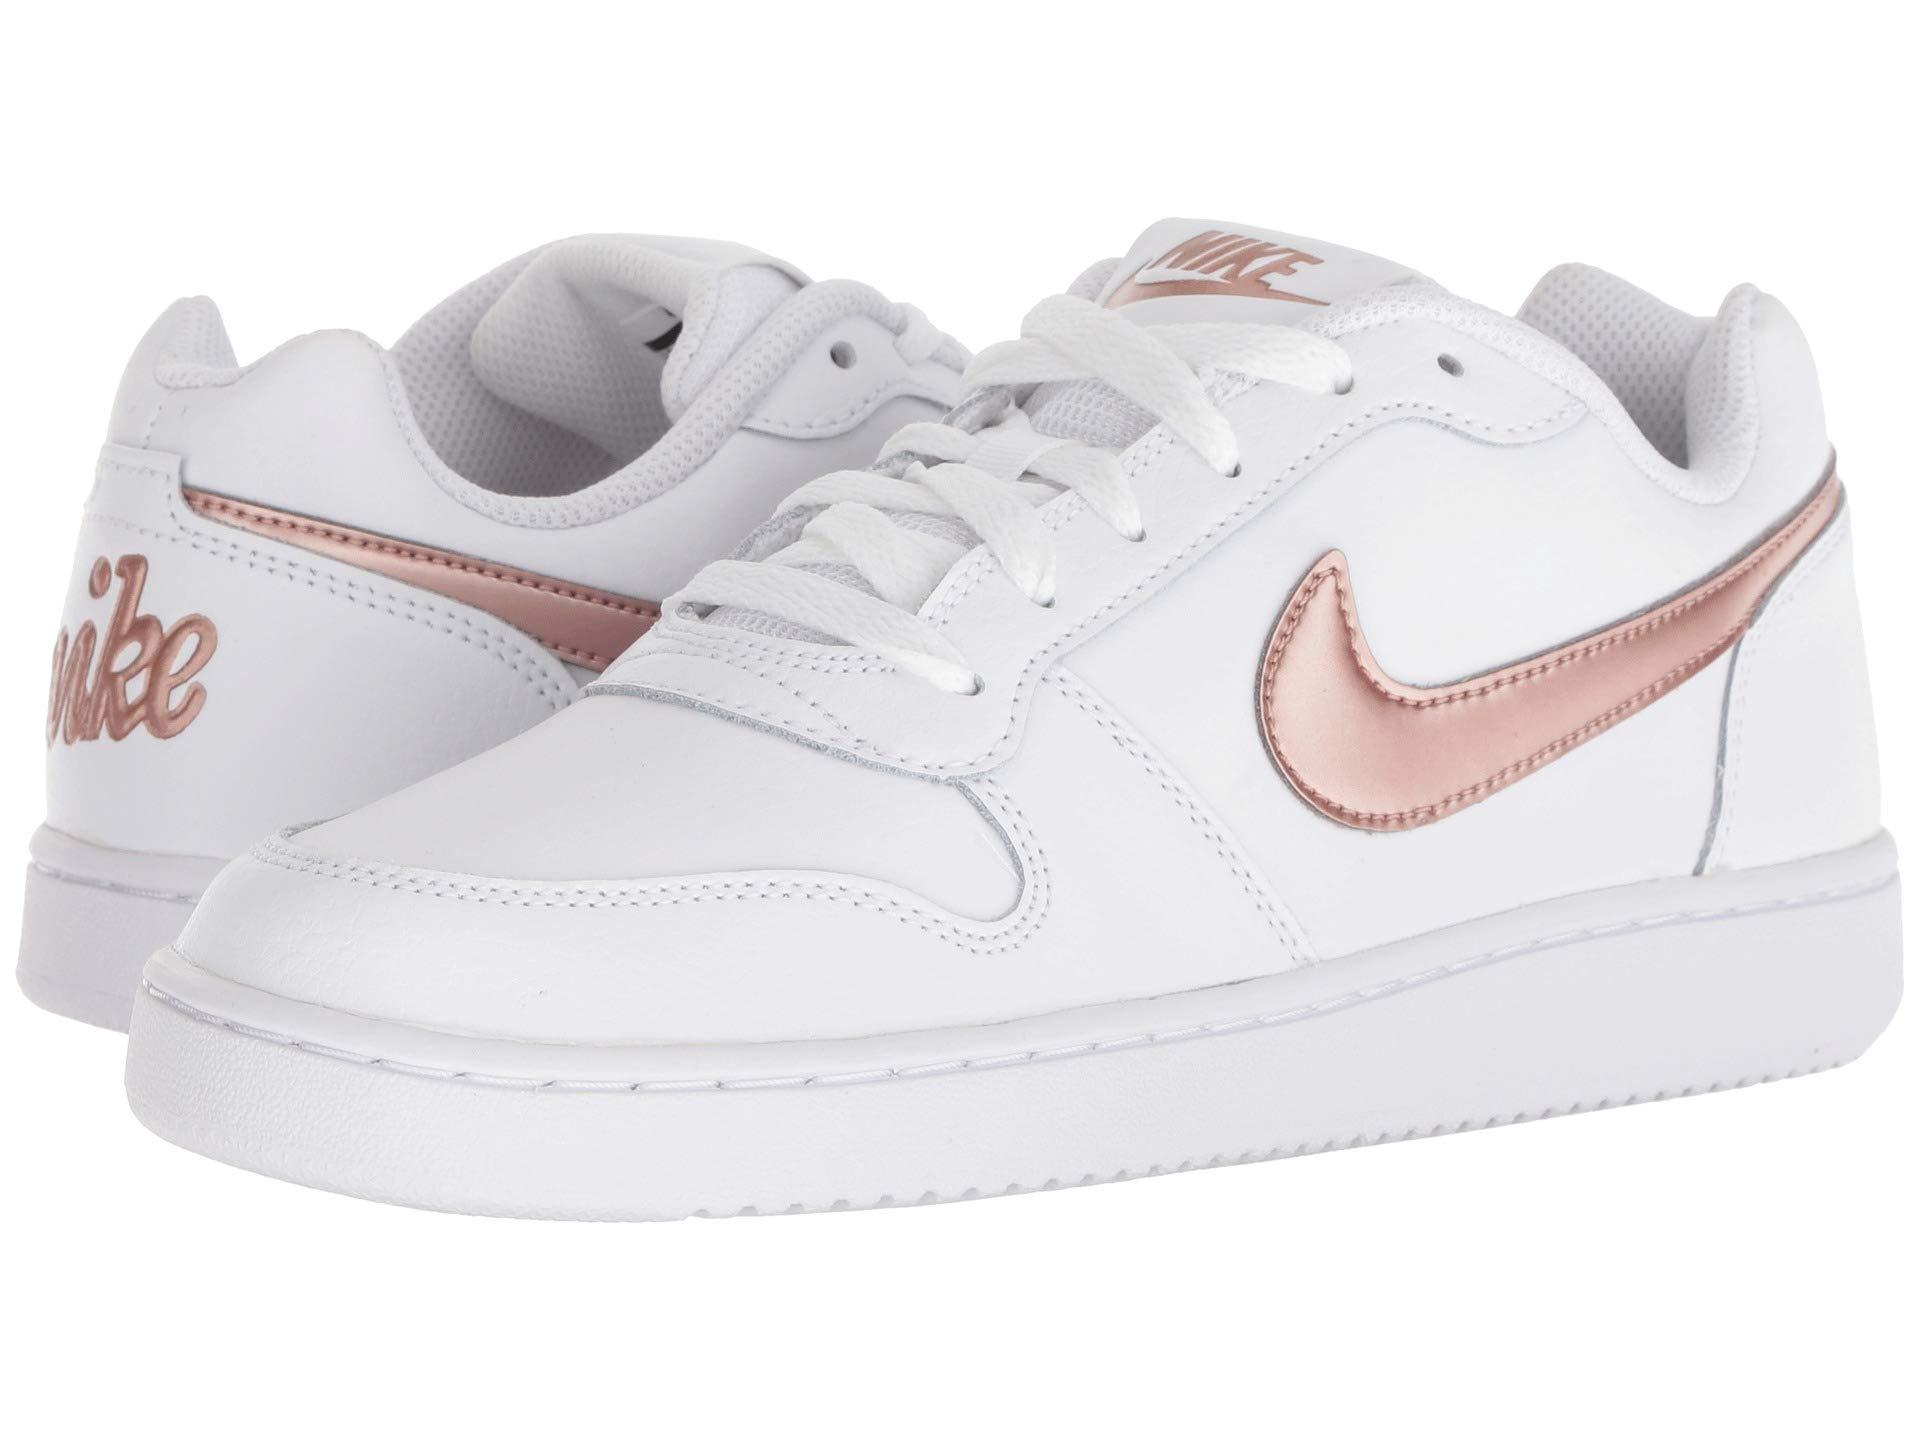 Nike Ebernon Low Sneaker in White/Rose 